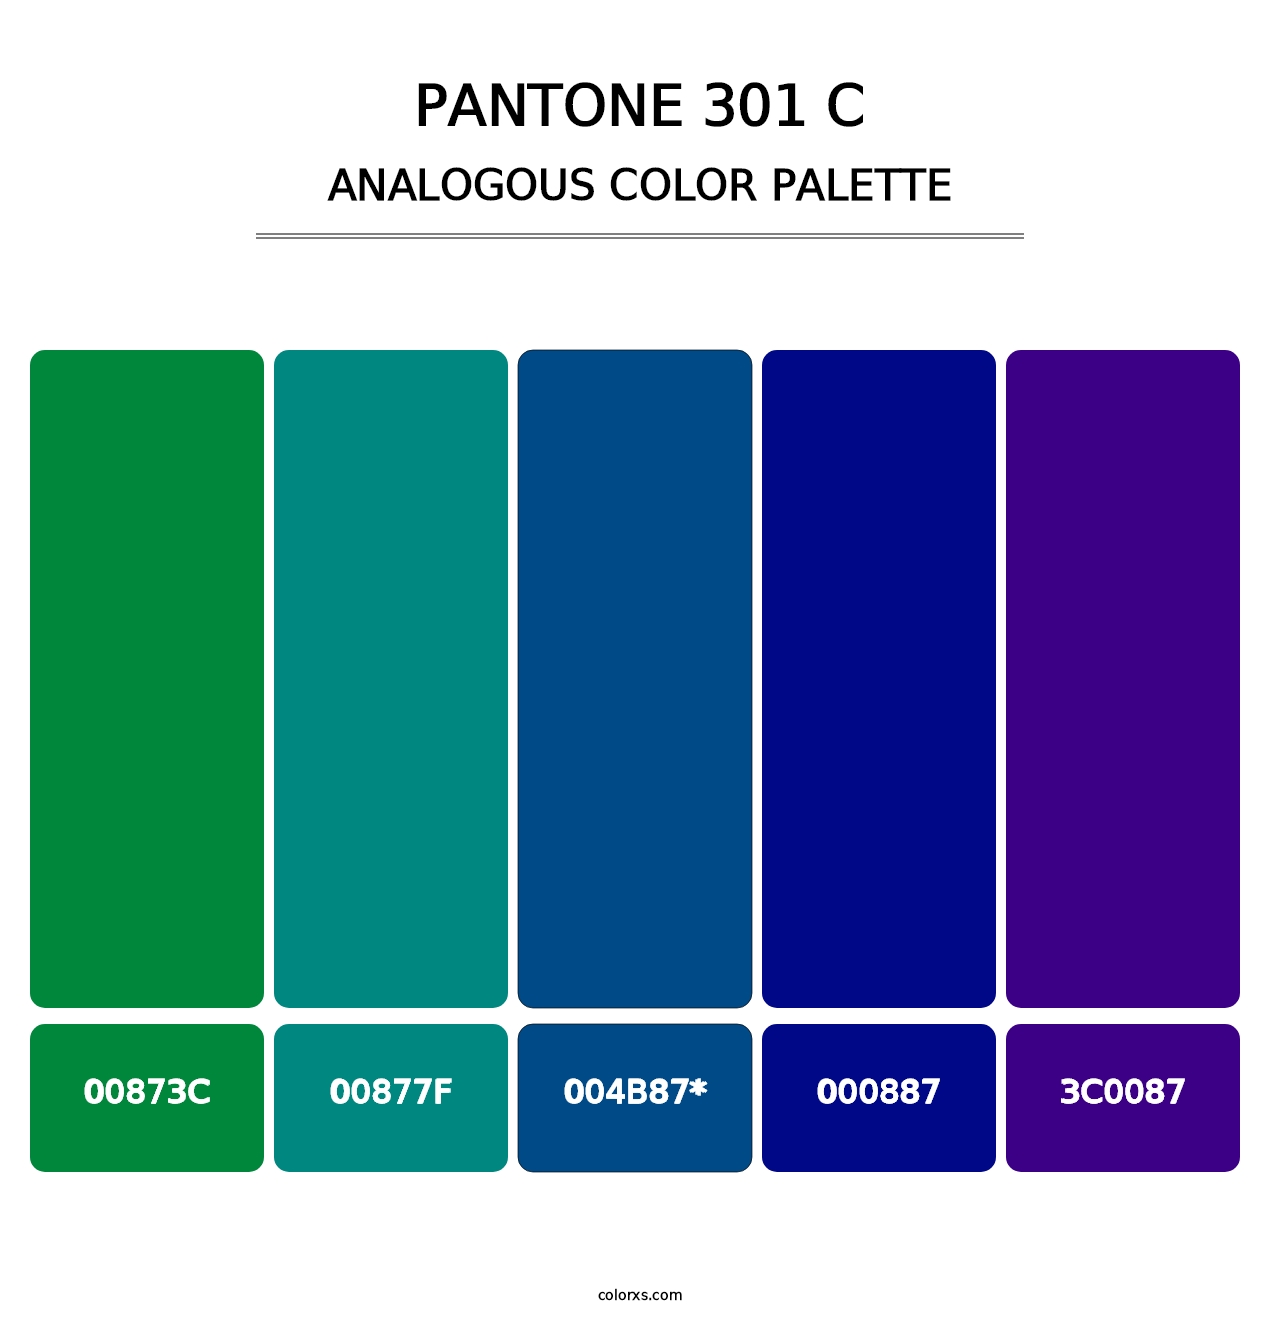 PANTONE 301 C - Analogous Color Palette